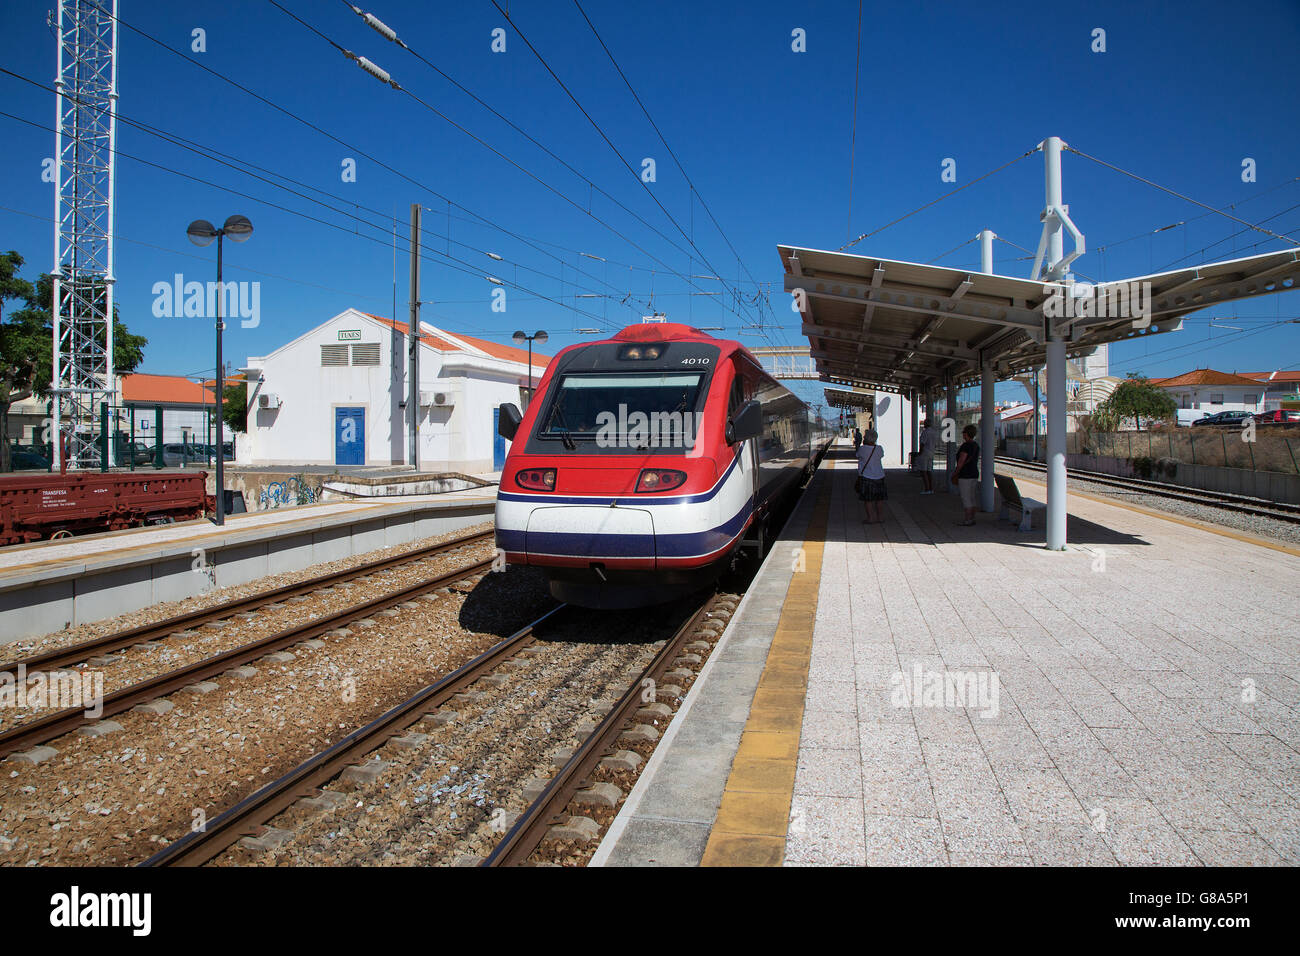 Alta velocità Alfa pendolari pendolino presso Tunes stazione ferroviaria in Algarve, PORTOGALLO Foto Stock